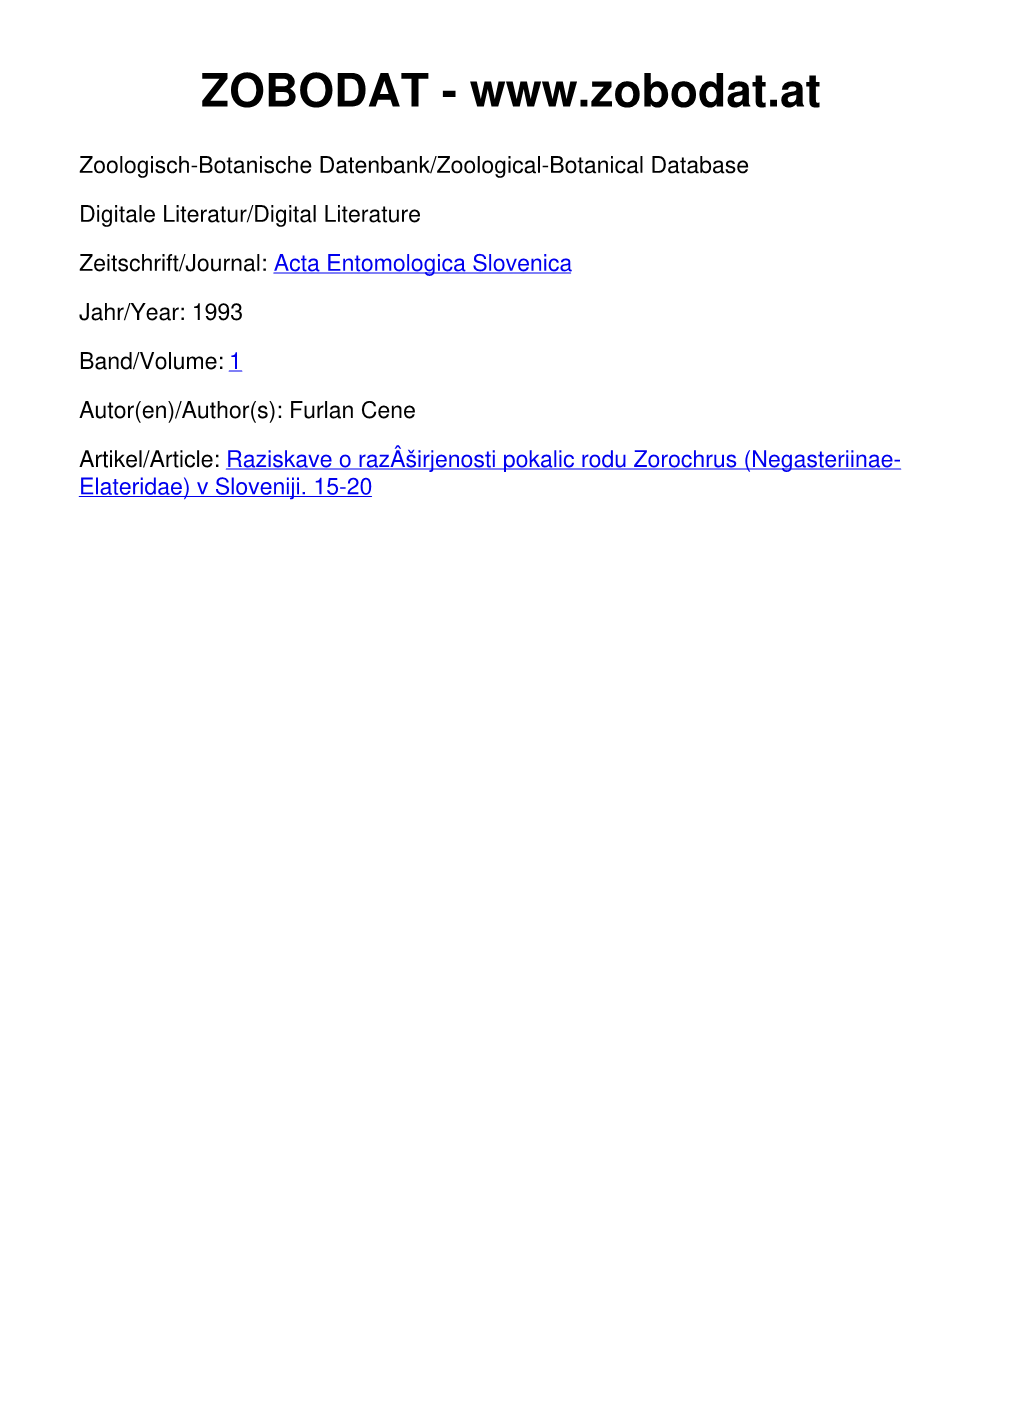 Raziskave O Razširjenosti Pokalic Rod Zorochrus (Negasteriinae-Elateridae) V Sloveniji